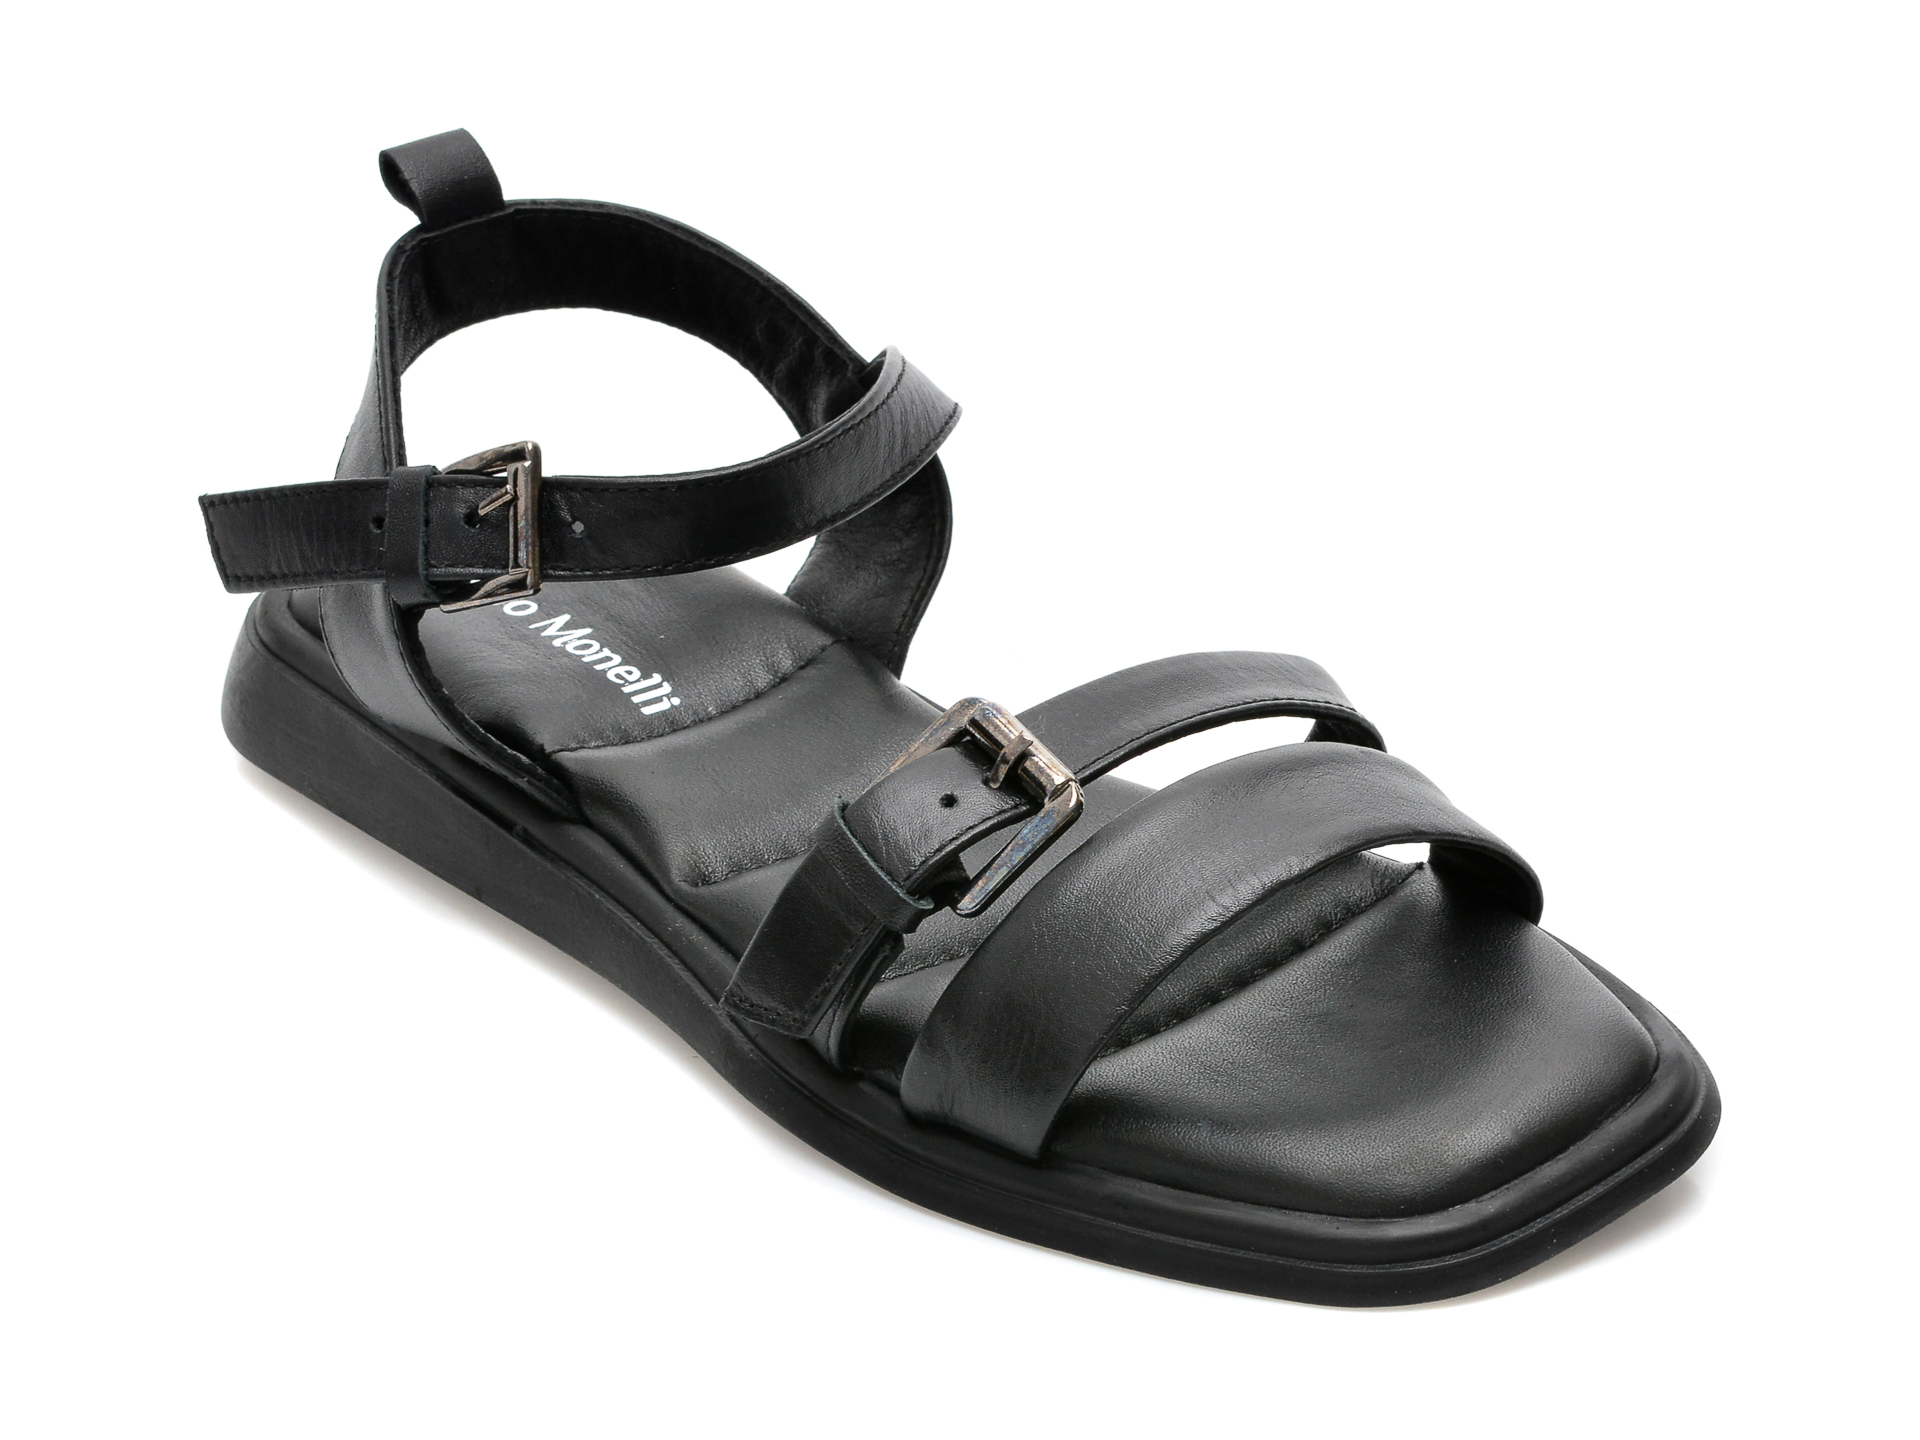 Sandale FABIO MONELLI negre, 694, din piele naturala /femei/sandale